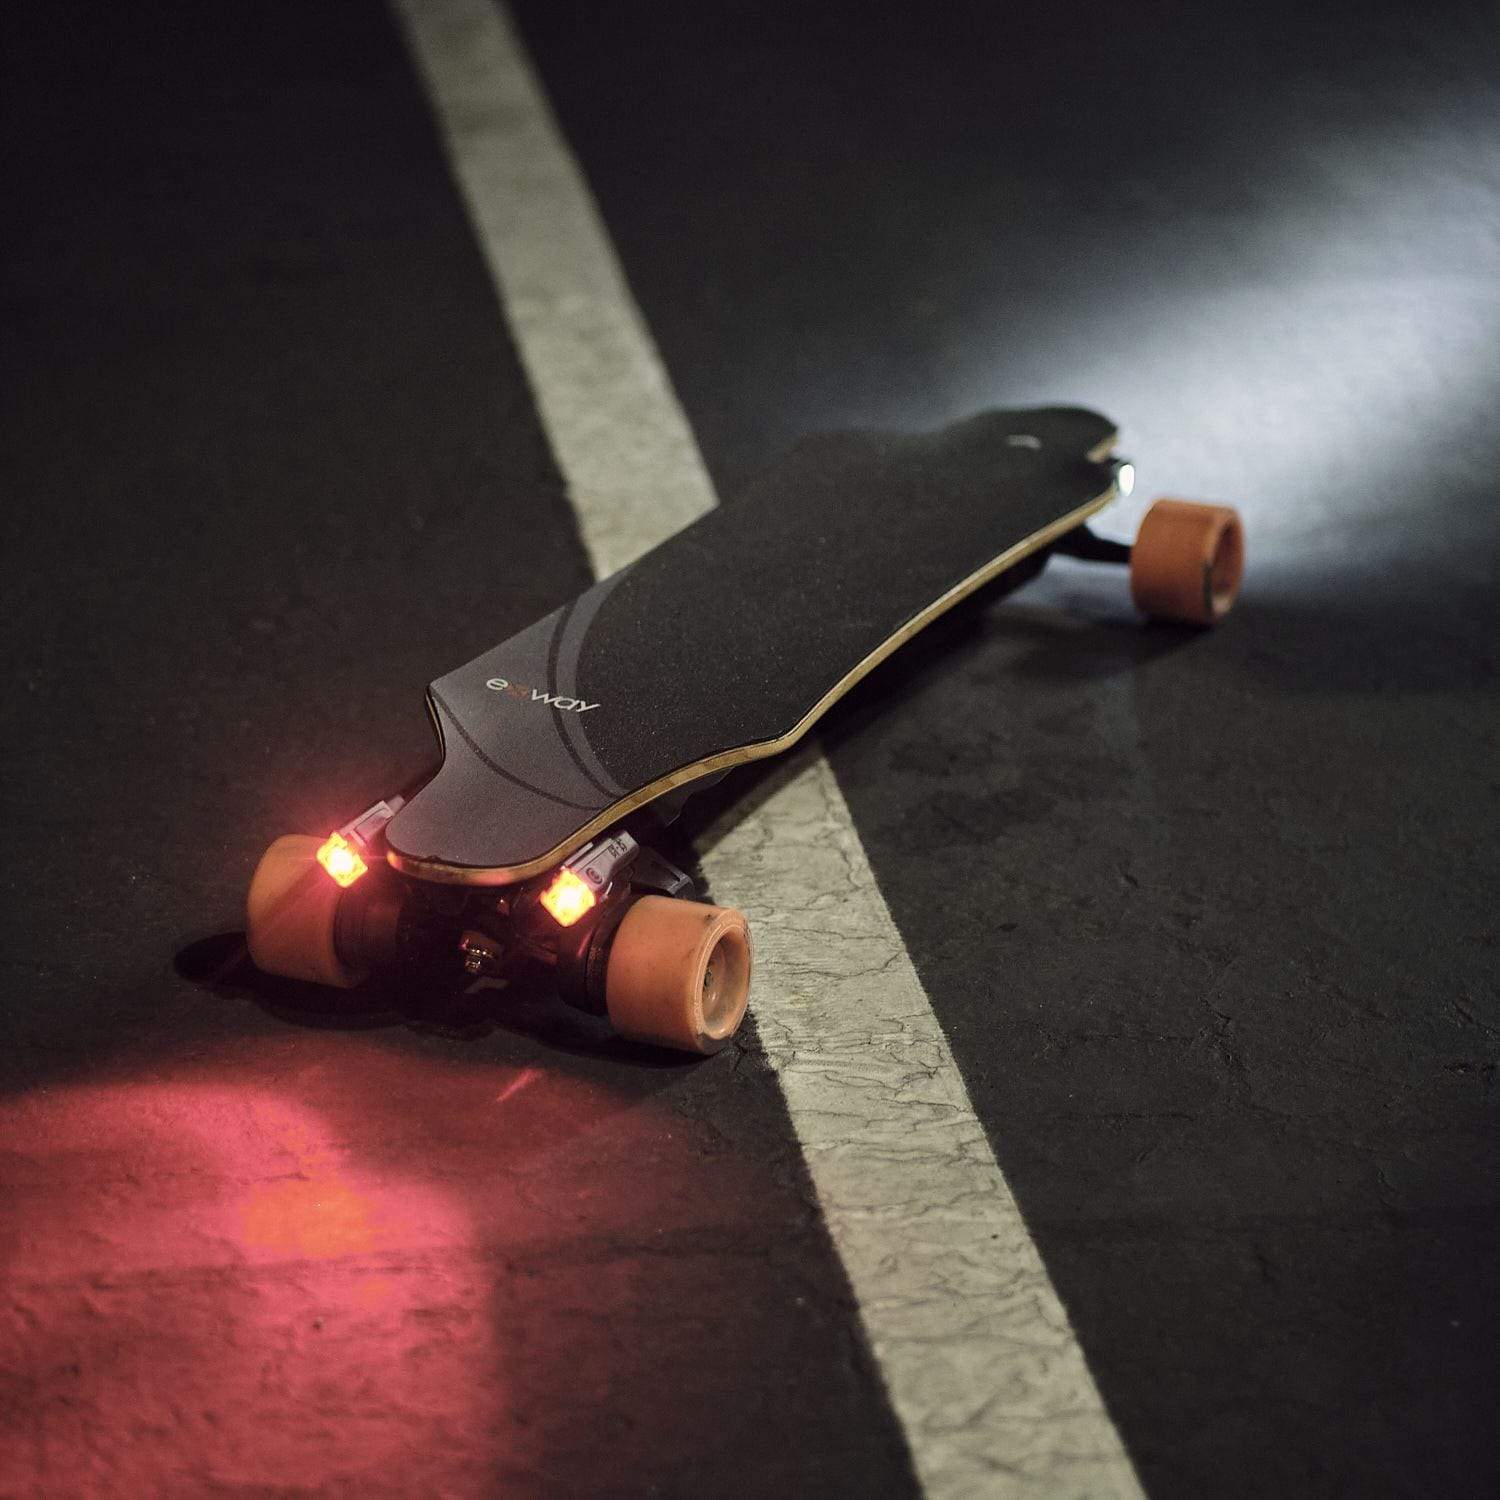 Underglow Skateboard Lights